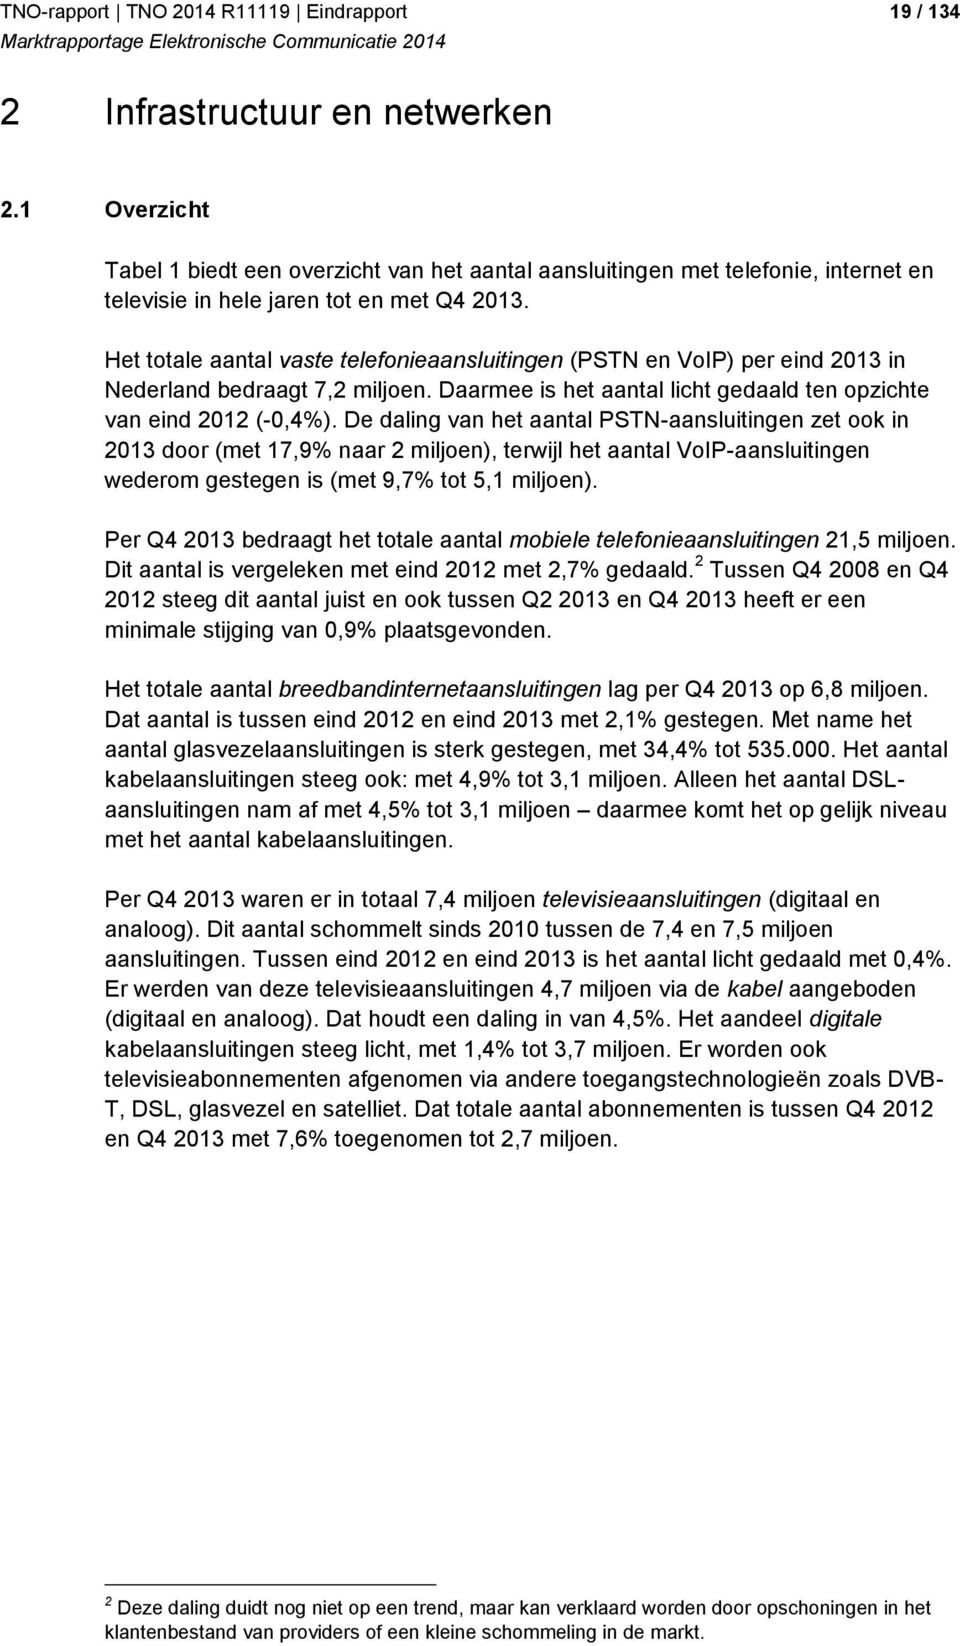 Het totale aantal vaste telefonieaansluitingen (PSTN en VoIP) per eind 2013 in Nederland bedraagt 7,2 miljoen. Daarmee is het aantal licht gedaald ten opzichte van eind 2012 (-0,4%).